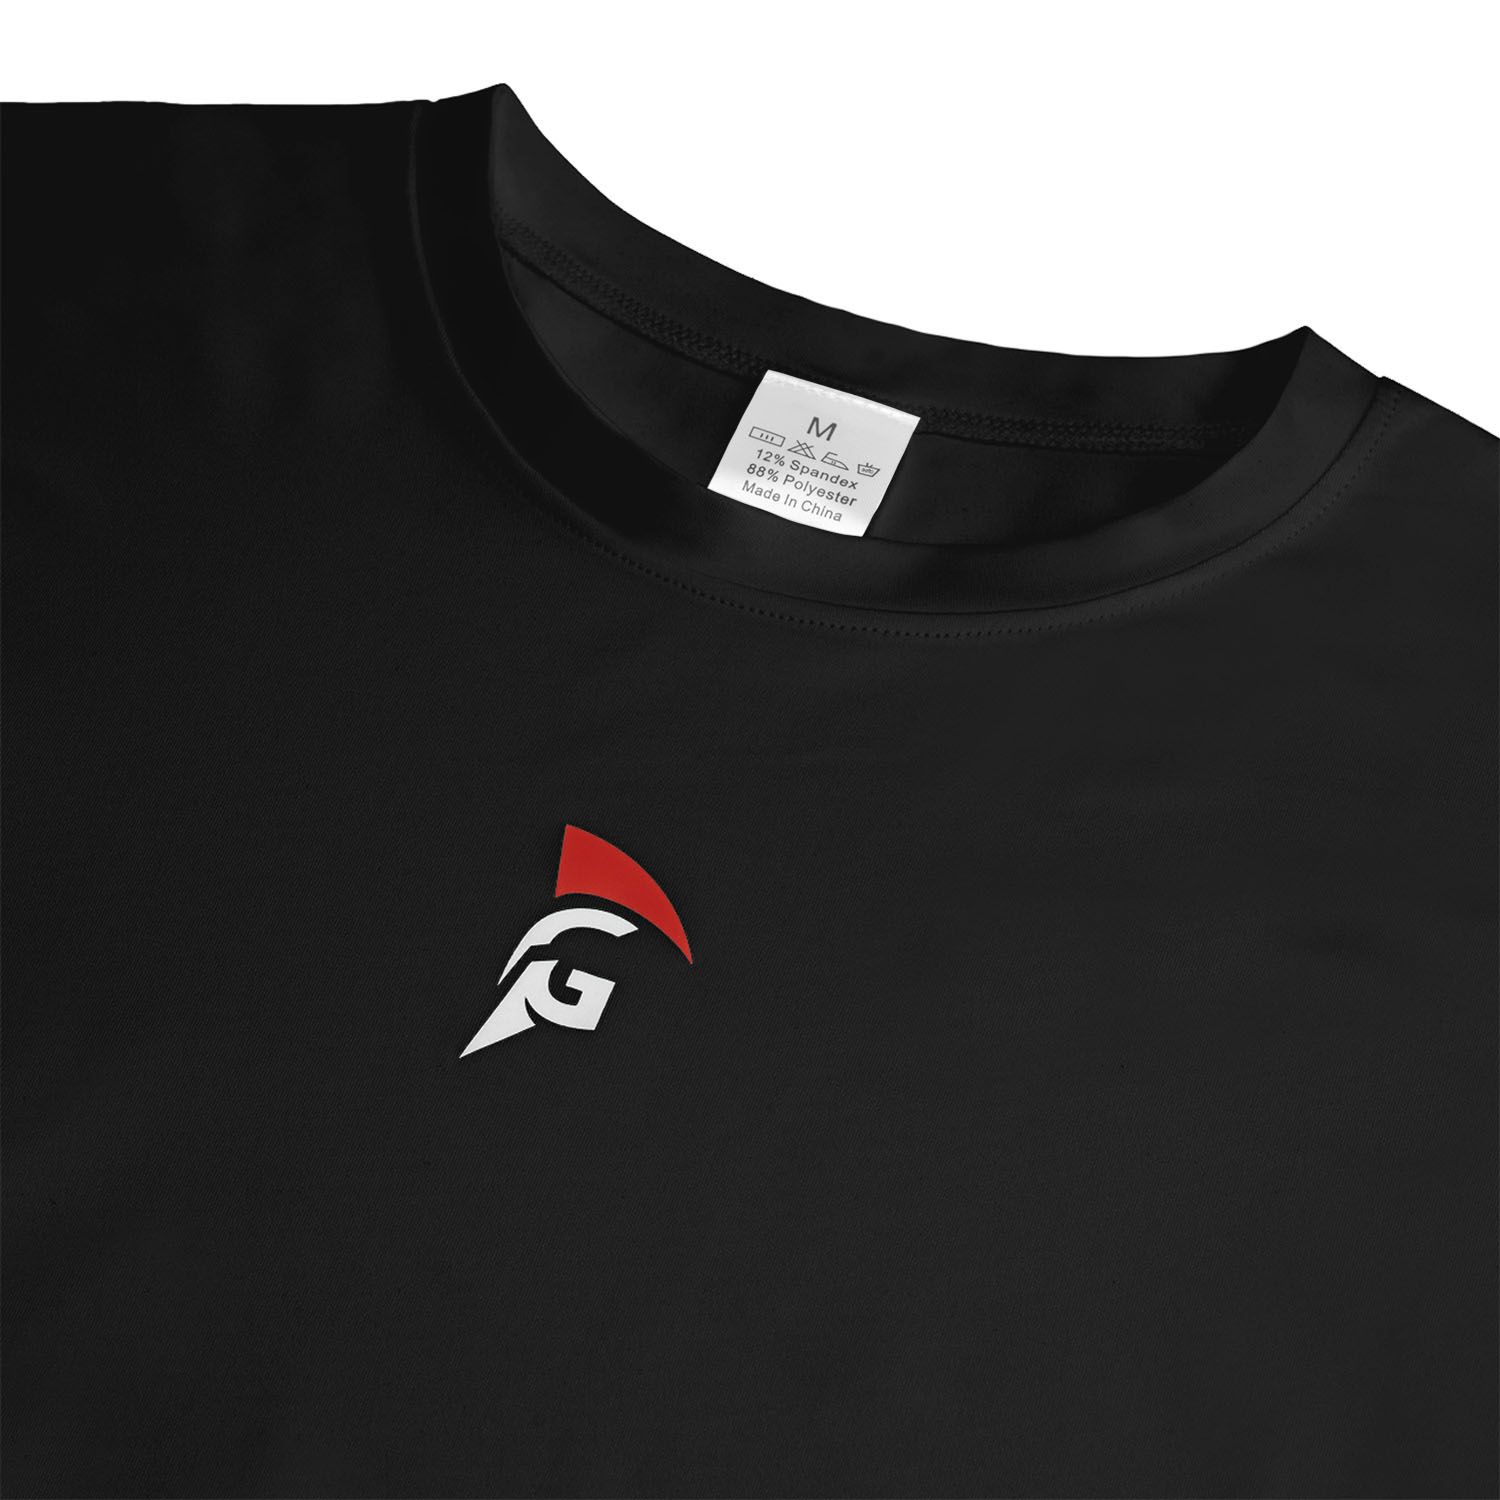 gladiator sports thermal shirt for men black detail logo